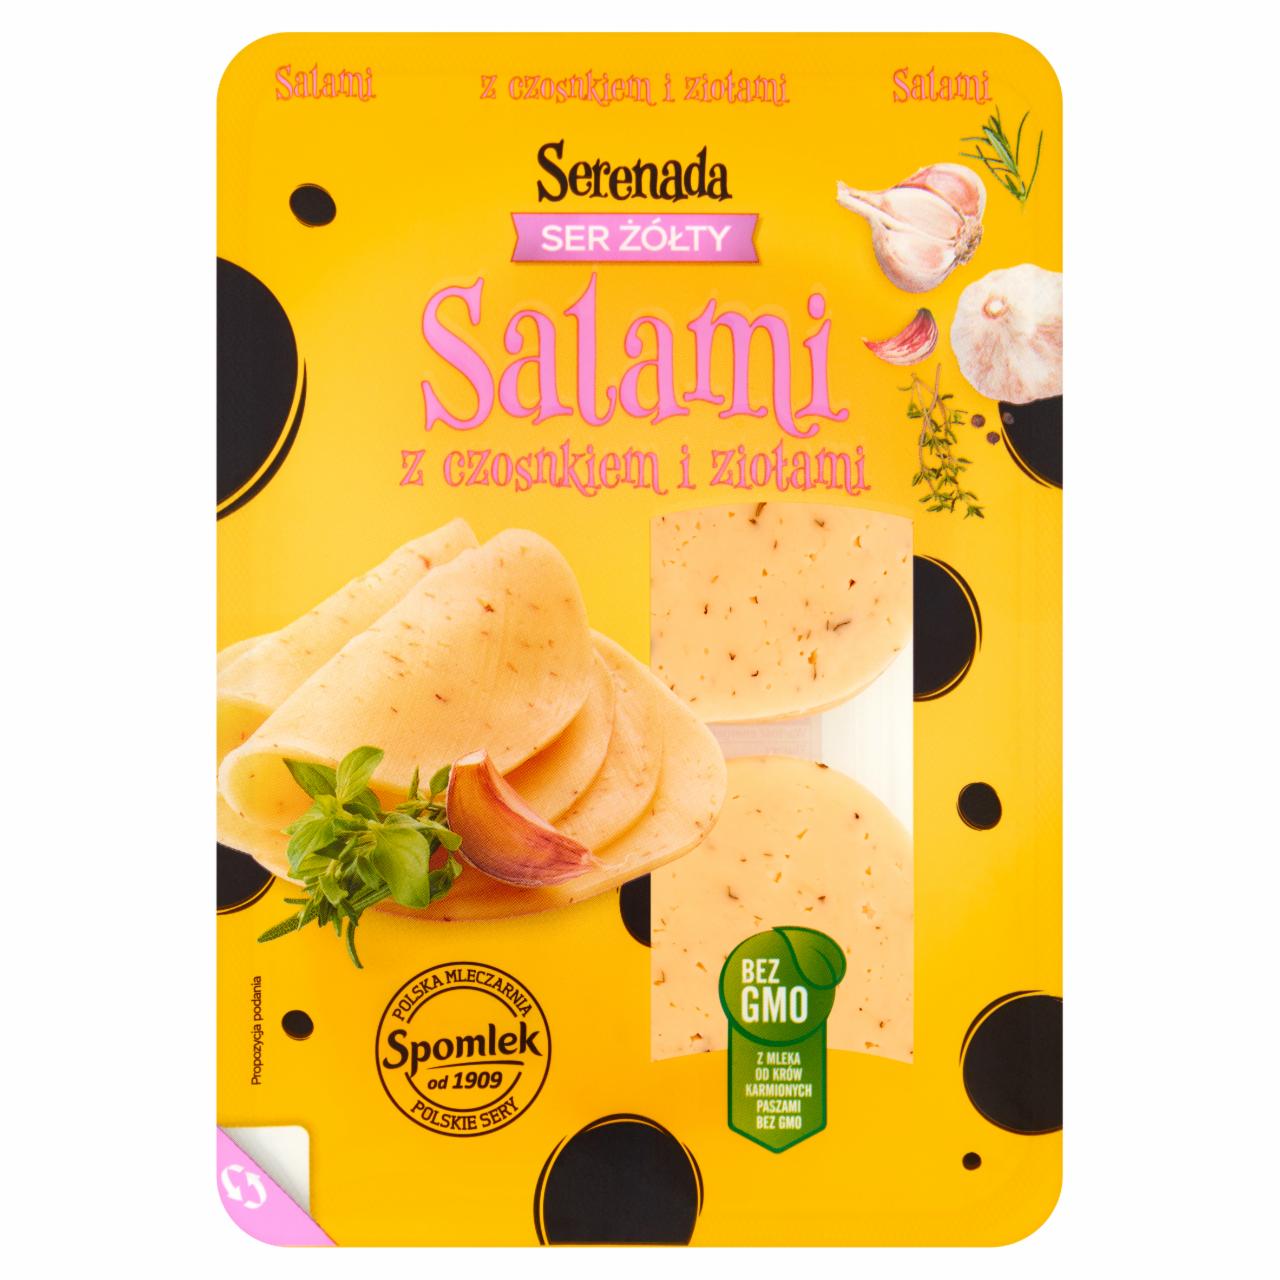 Zdjęcia - Ser żółty salami z czosnkiem i ziołami Serenada